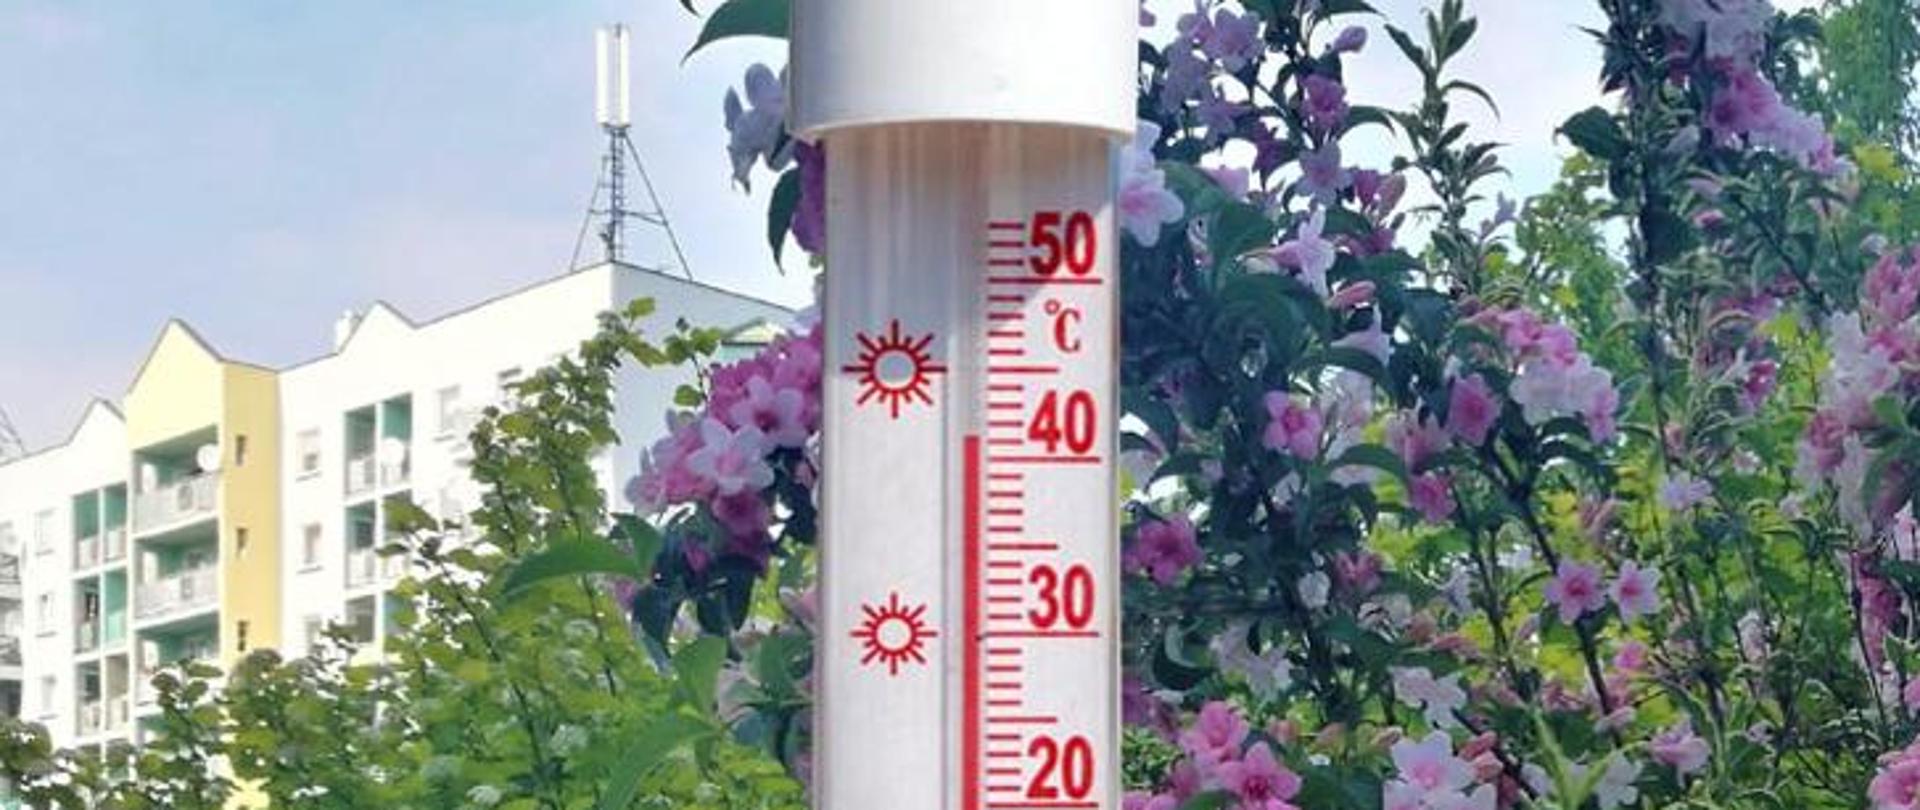 Termometr wskazujący temperaturę 41 stopni na tle bloku i kwitnących krzewów